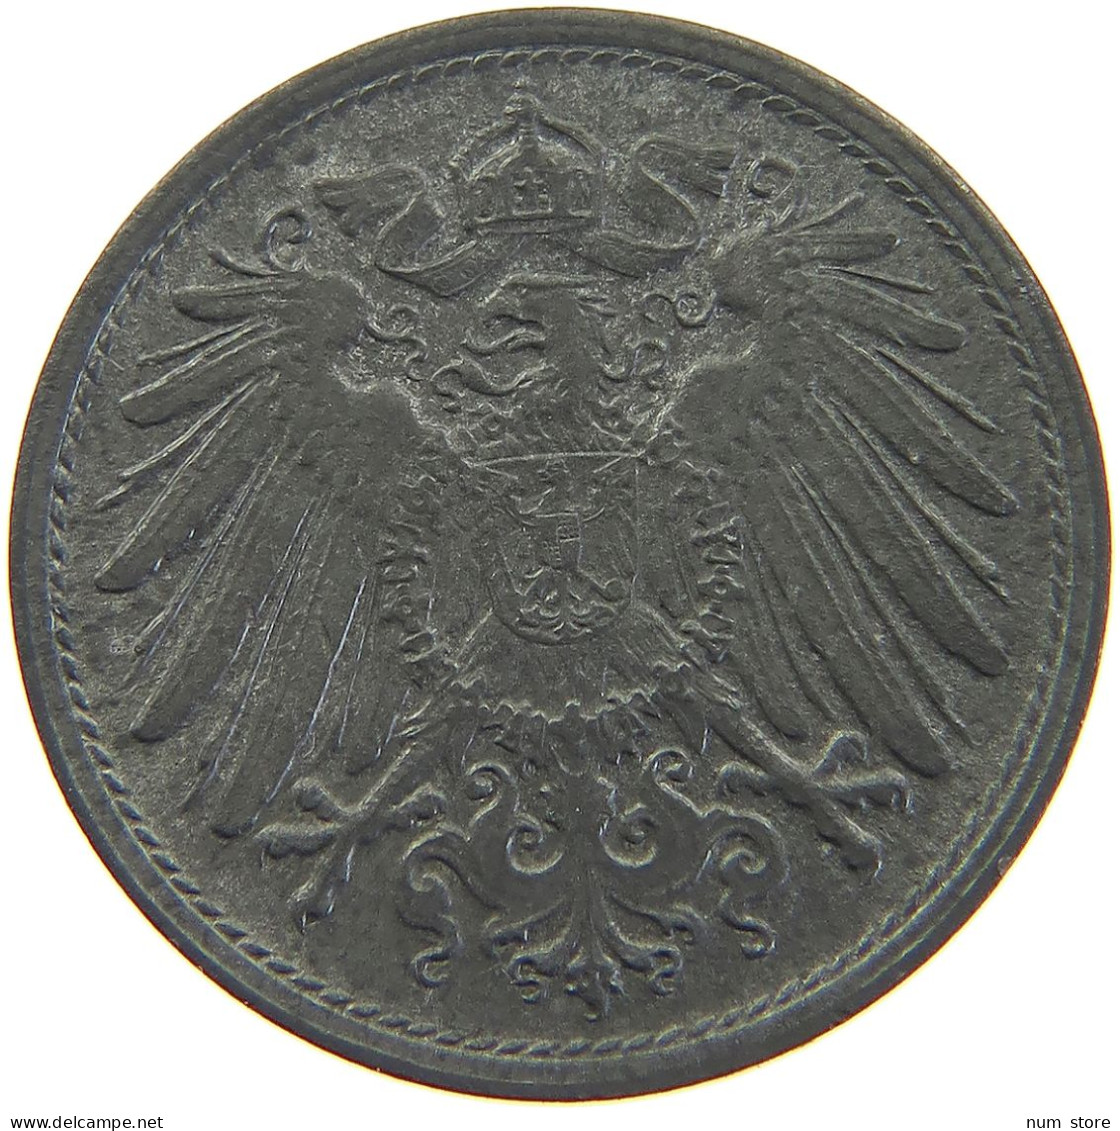 DEUTSCHES REICH 10 PFENNIG 1920  #MA 102793 - 10 Renten- & 10 Reichspfennig